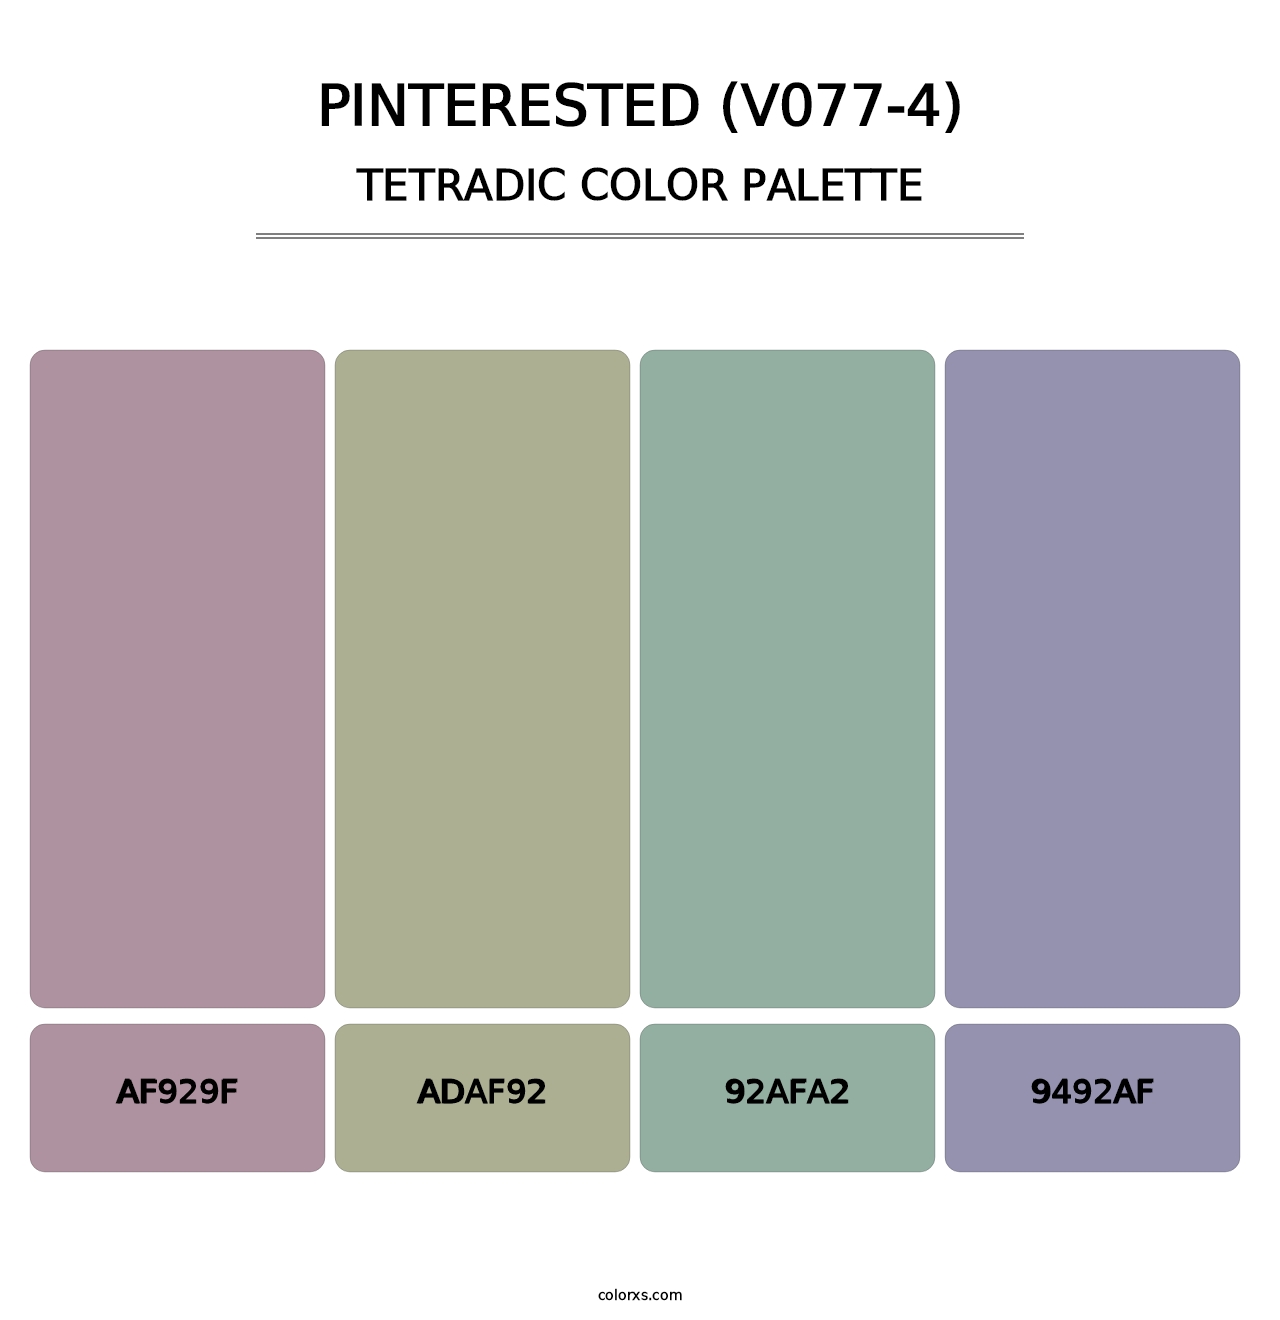 Pinterested (V077-4) - Tetradic Color Palette